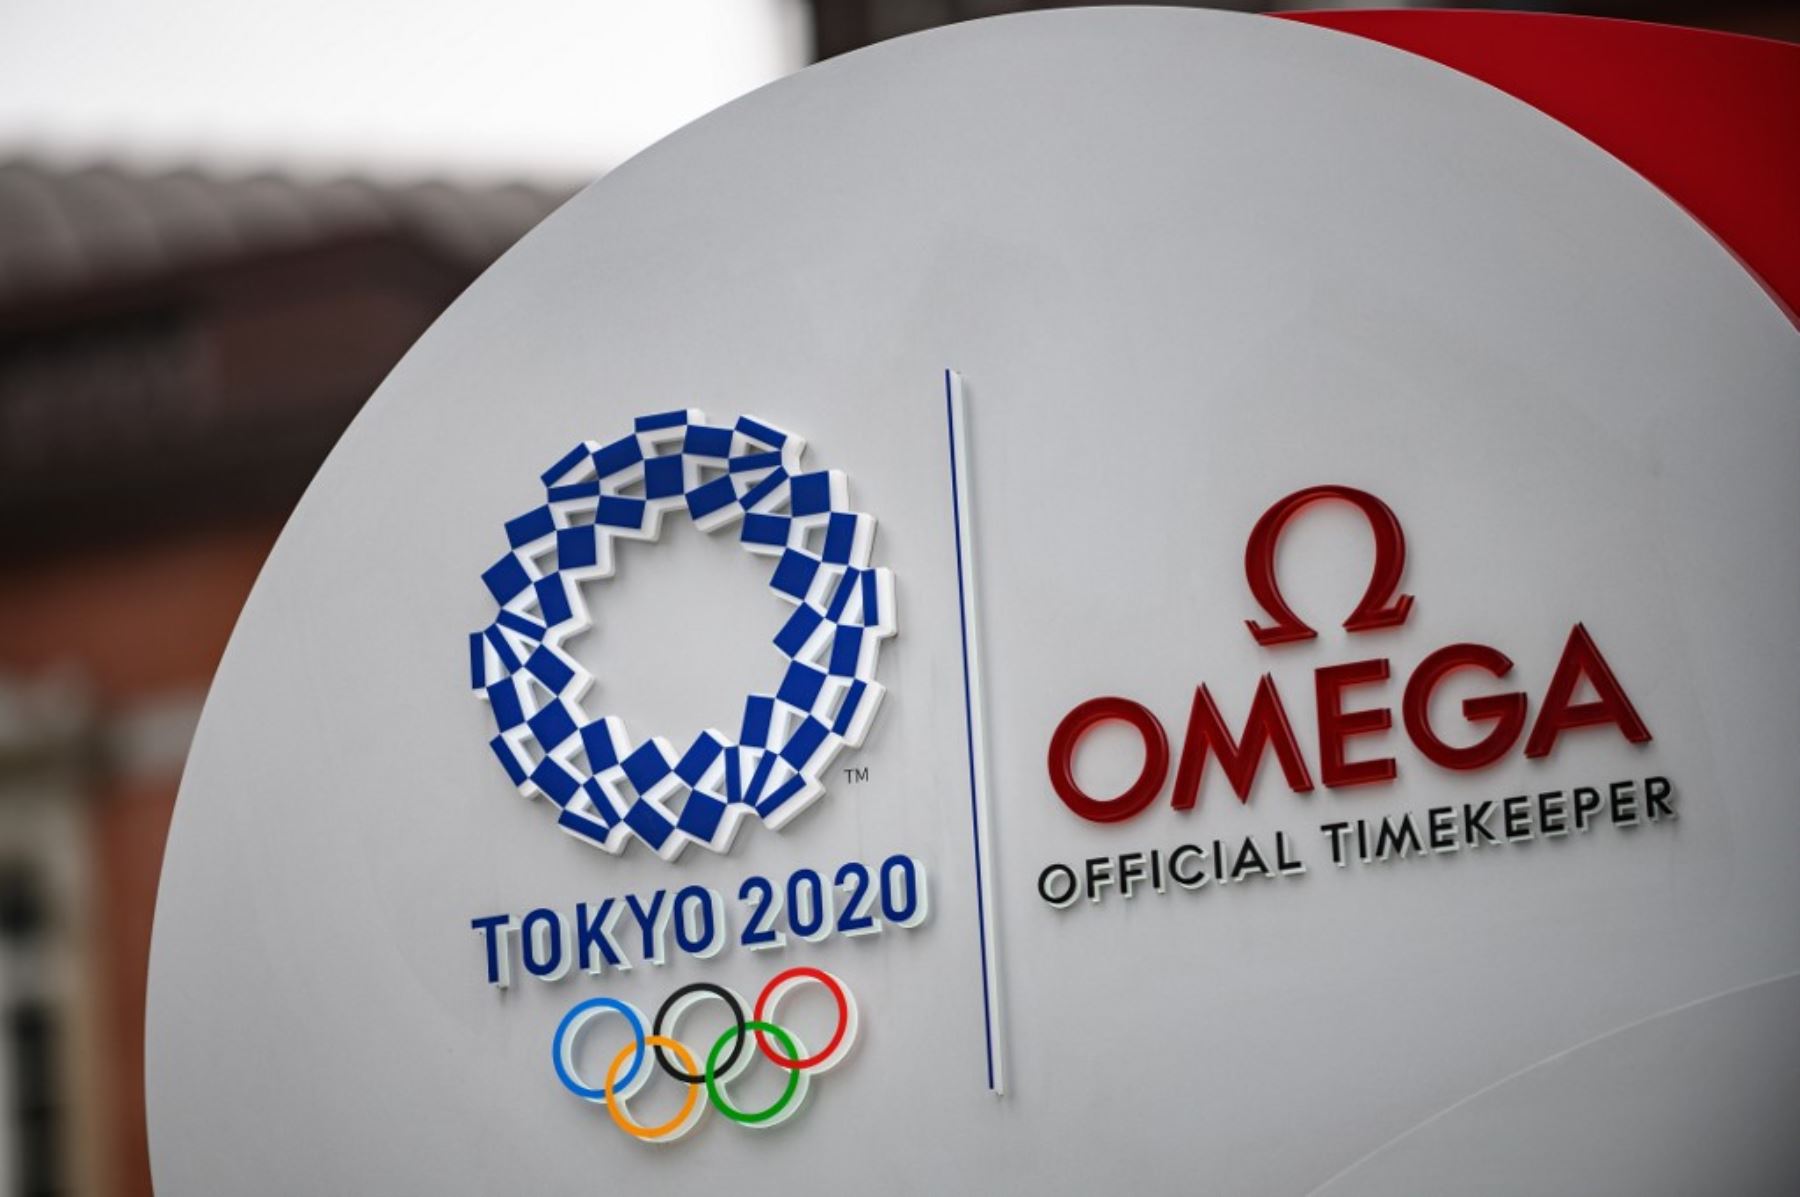 El aplazamiento de los Juegos de Tokio a 2021 debido a la propagación del coronavirus es una buena noticia para los patrocinadores, que prefieren esperar a mejores días.